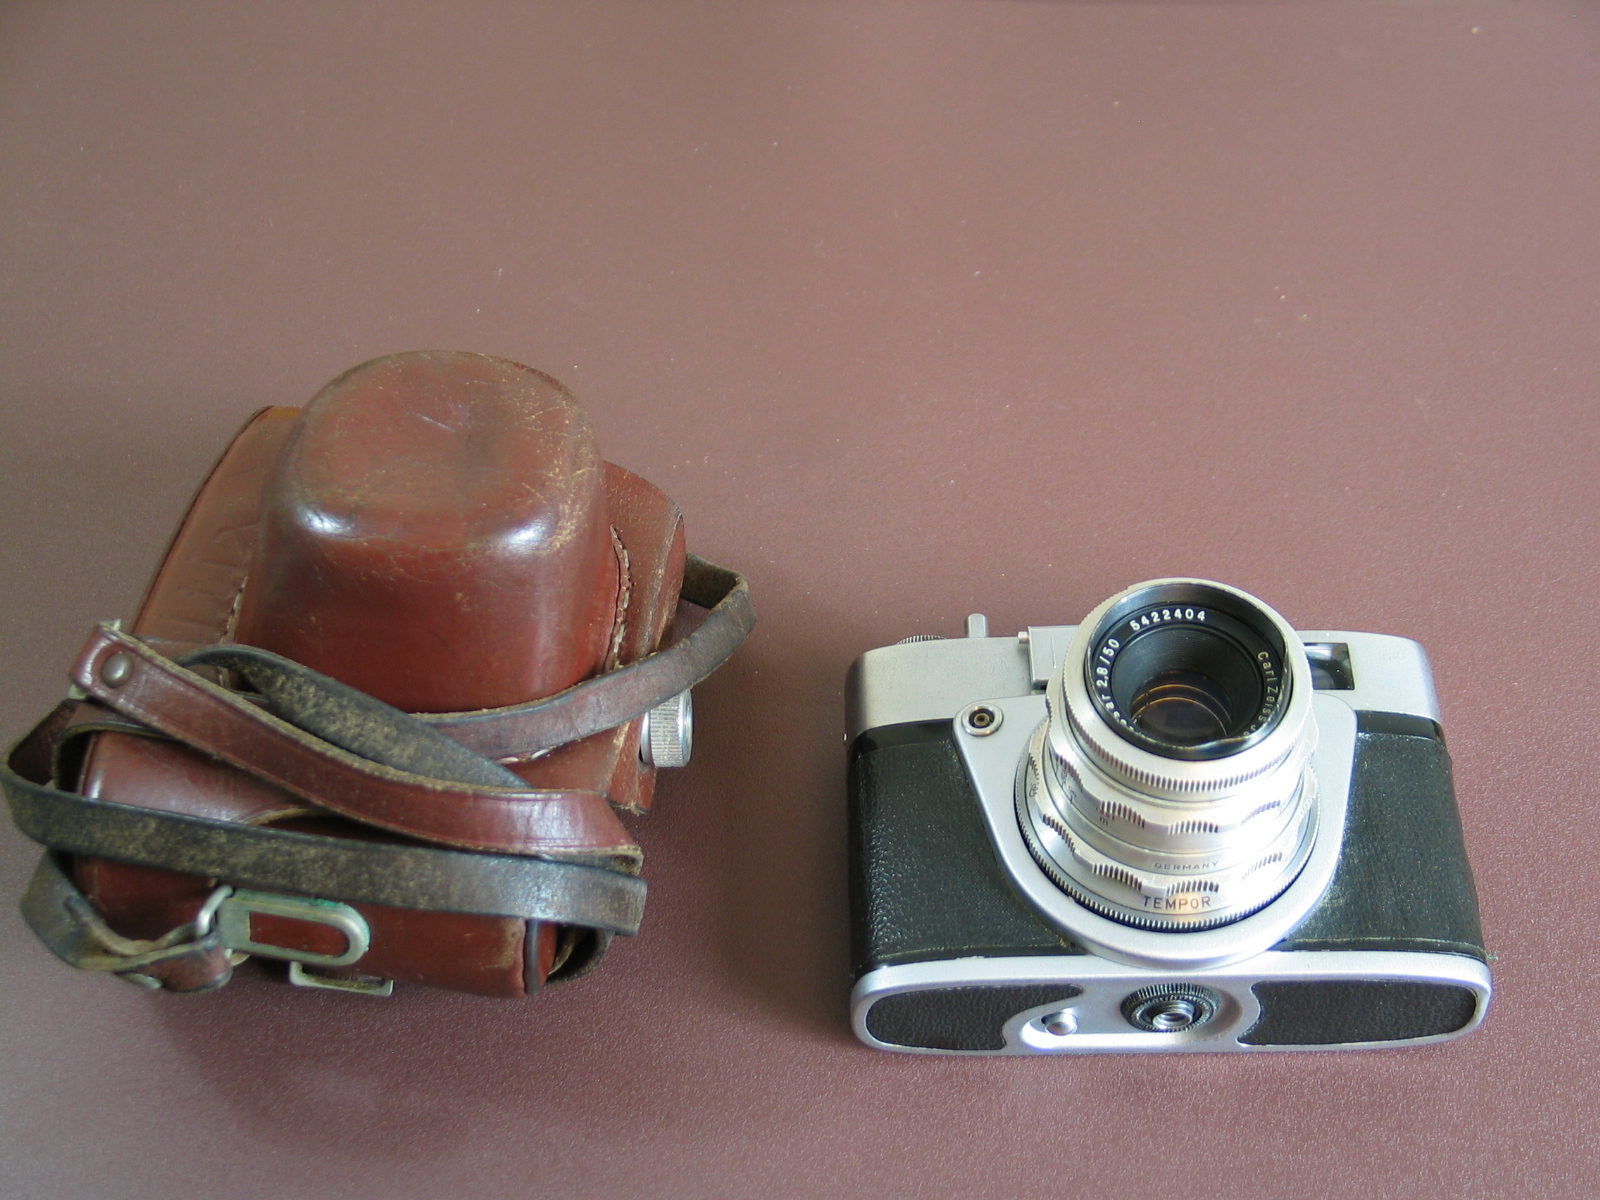 转让三个135胶片相机Altissa altix-nb，Pax m3，AGFA OPTIMA